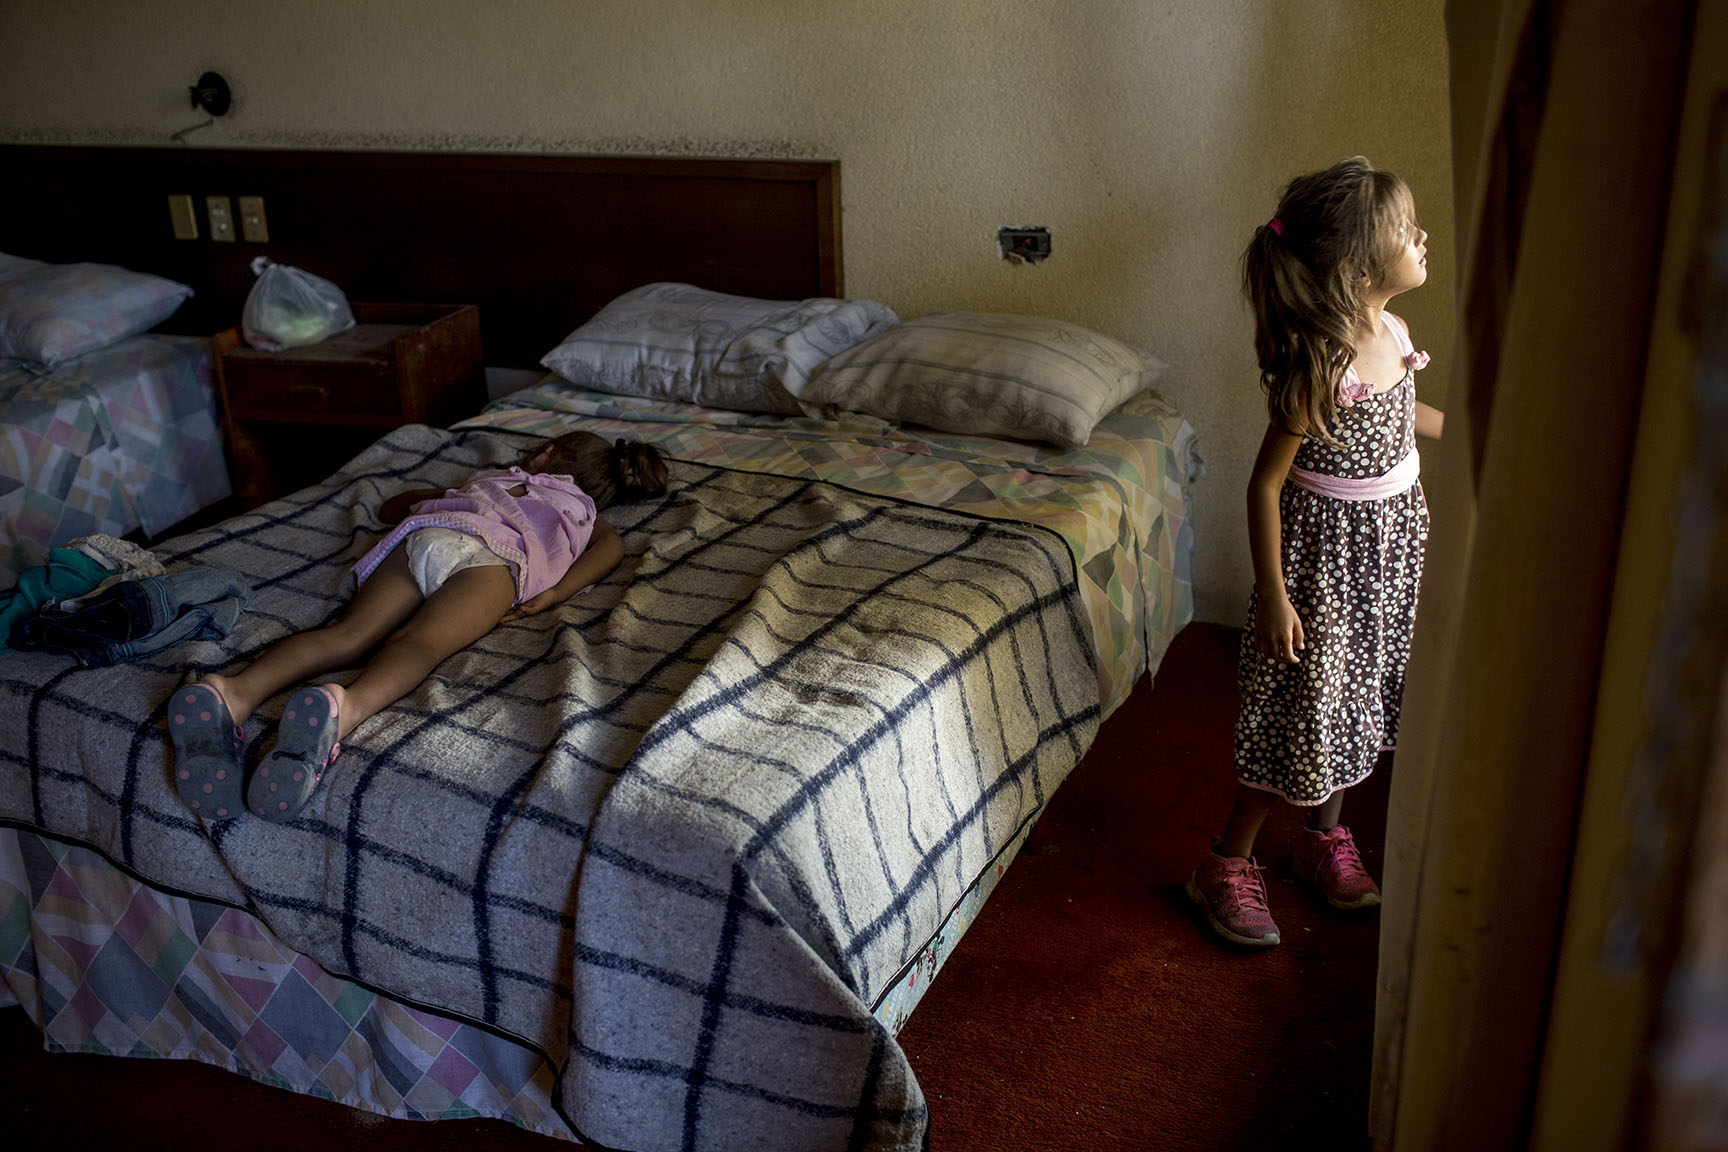 Astrid Melara, 6, mira desde la ventana de un cuarto del hotel, donde pasará la noche con su hermana Nicole, 5, ya dormida encima de la cama / Simone Dalmasso